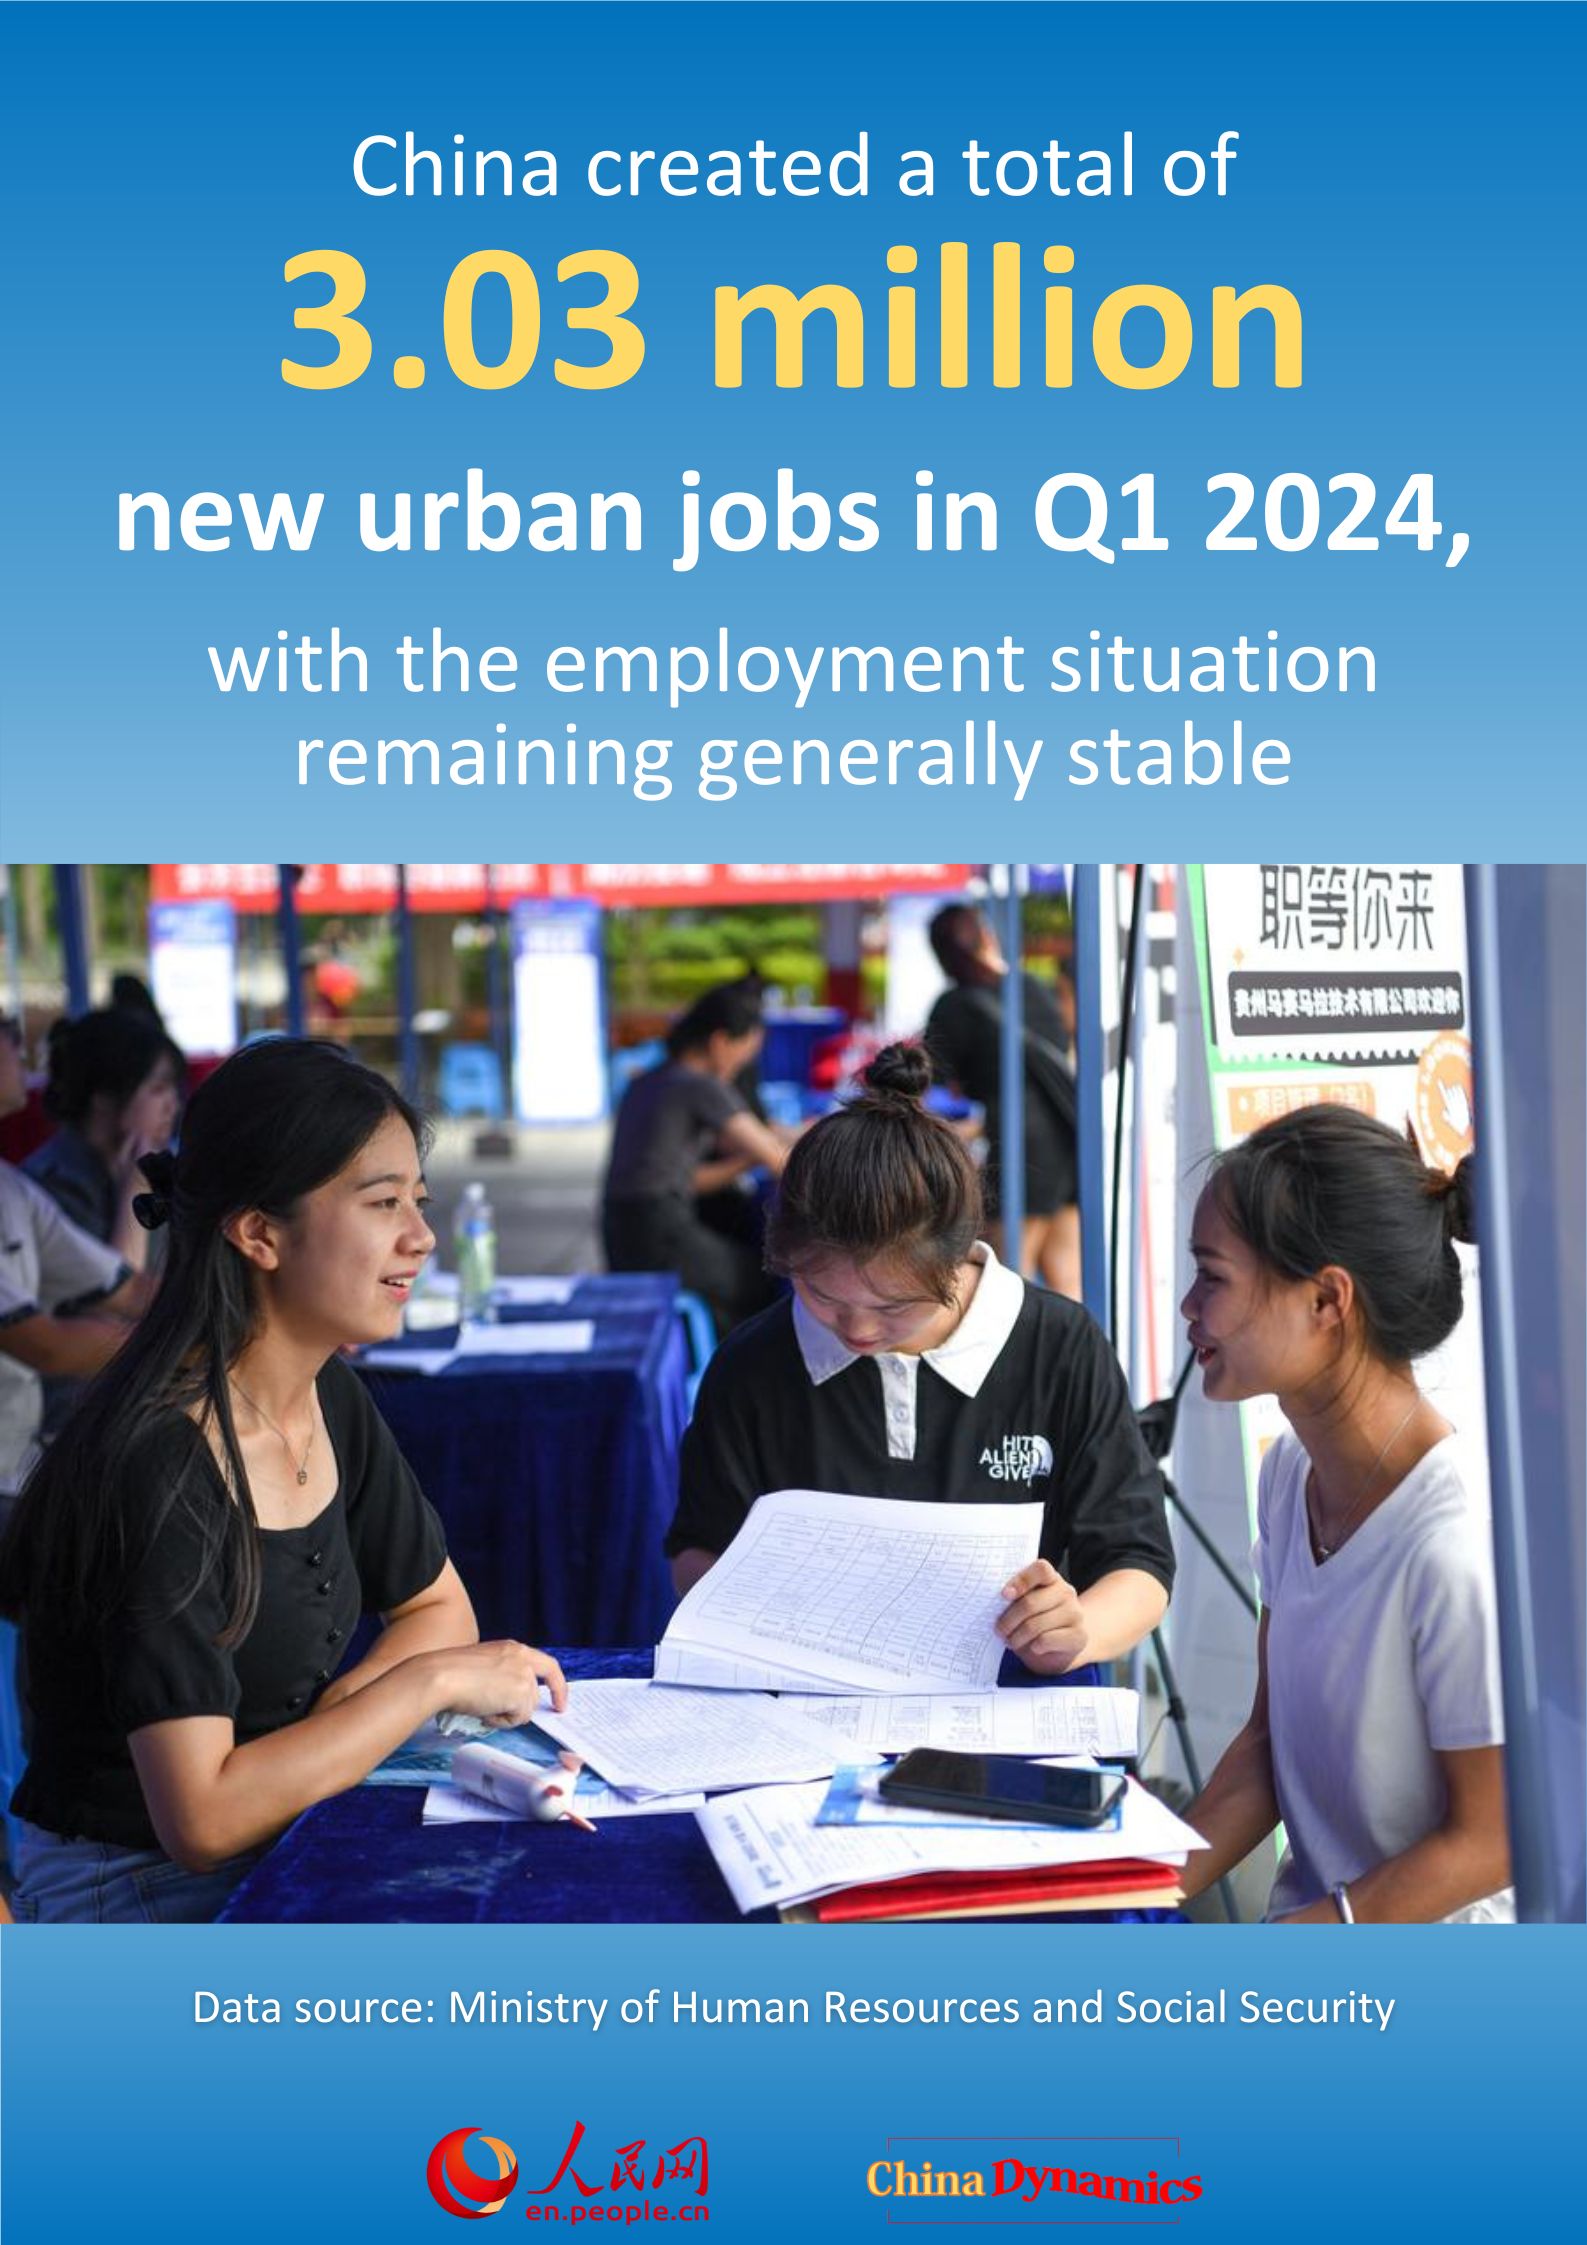 China Dynamics: China adds 3.03 million new urban jobs in Q1